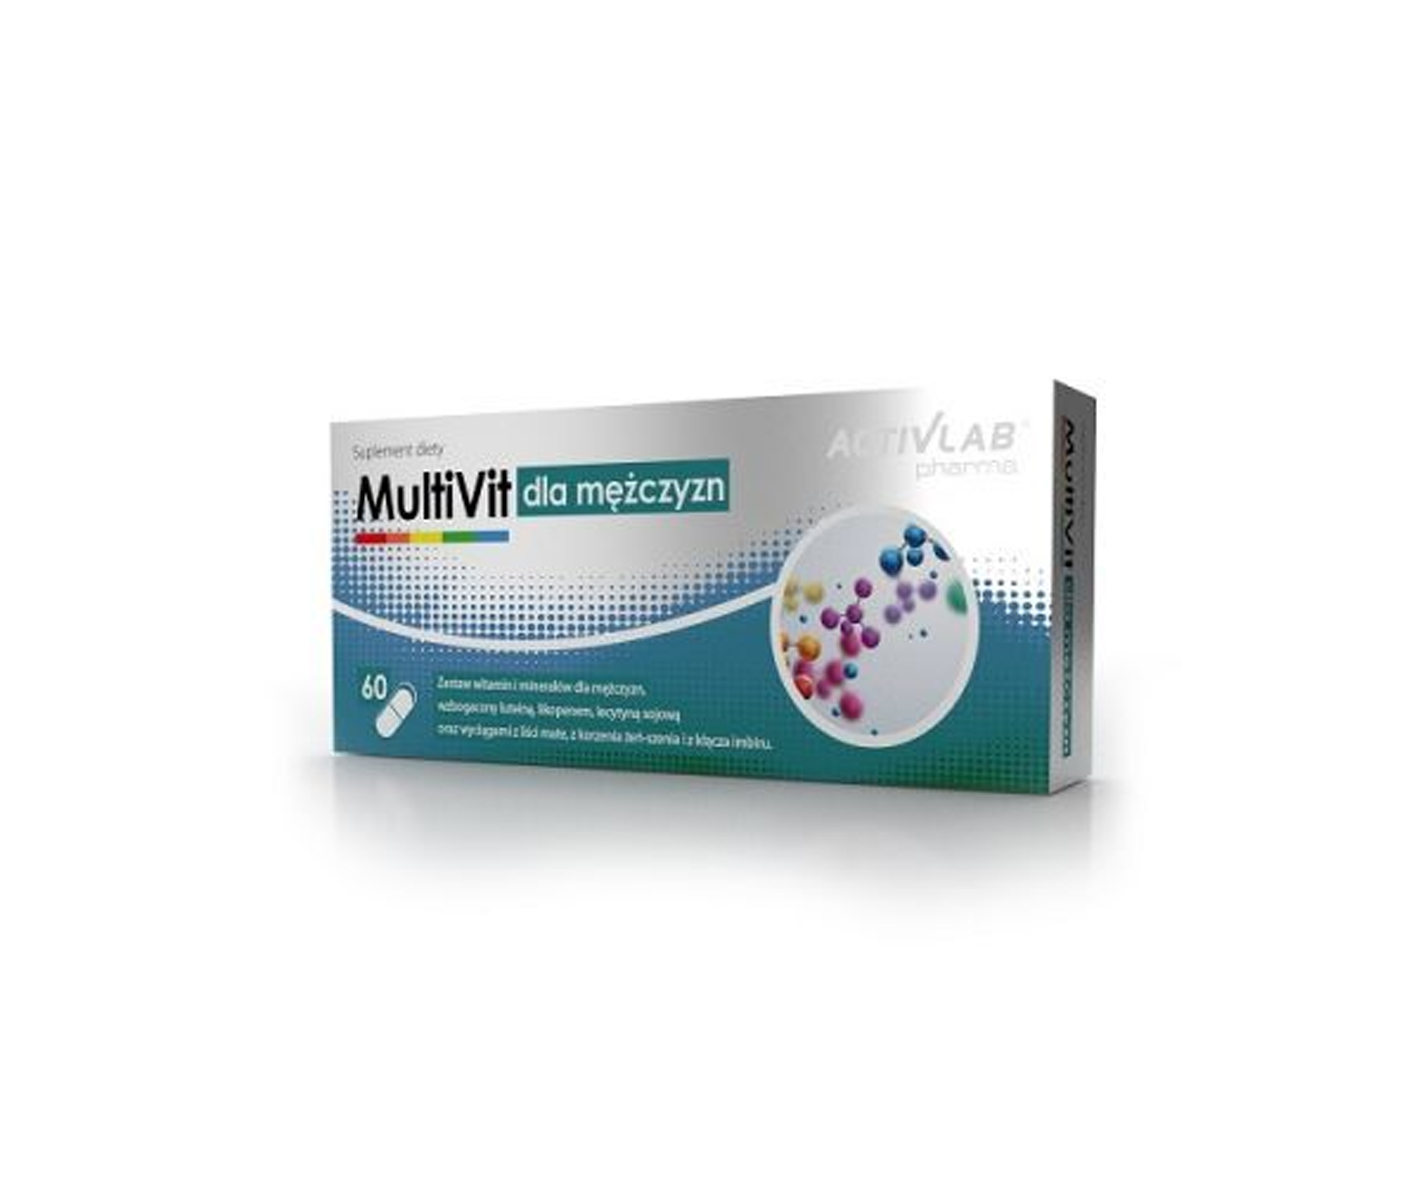 Activlab Pharma, Multivit dla mężczyzn